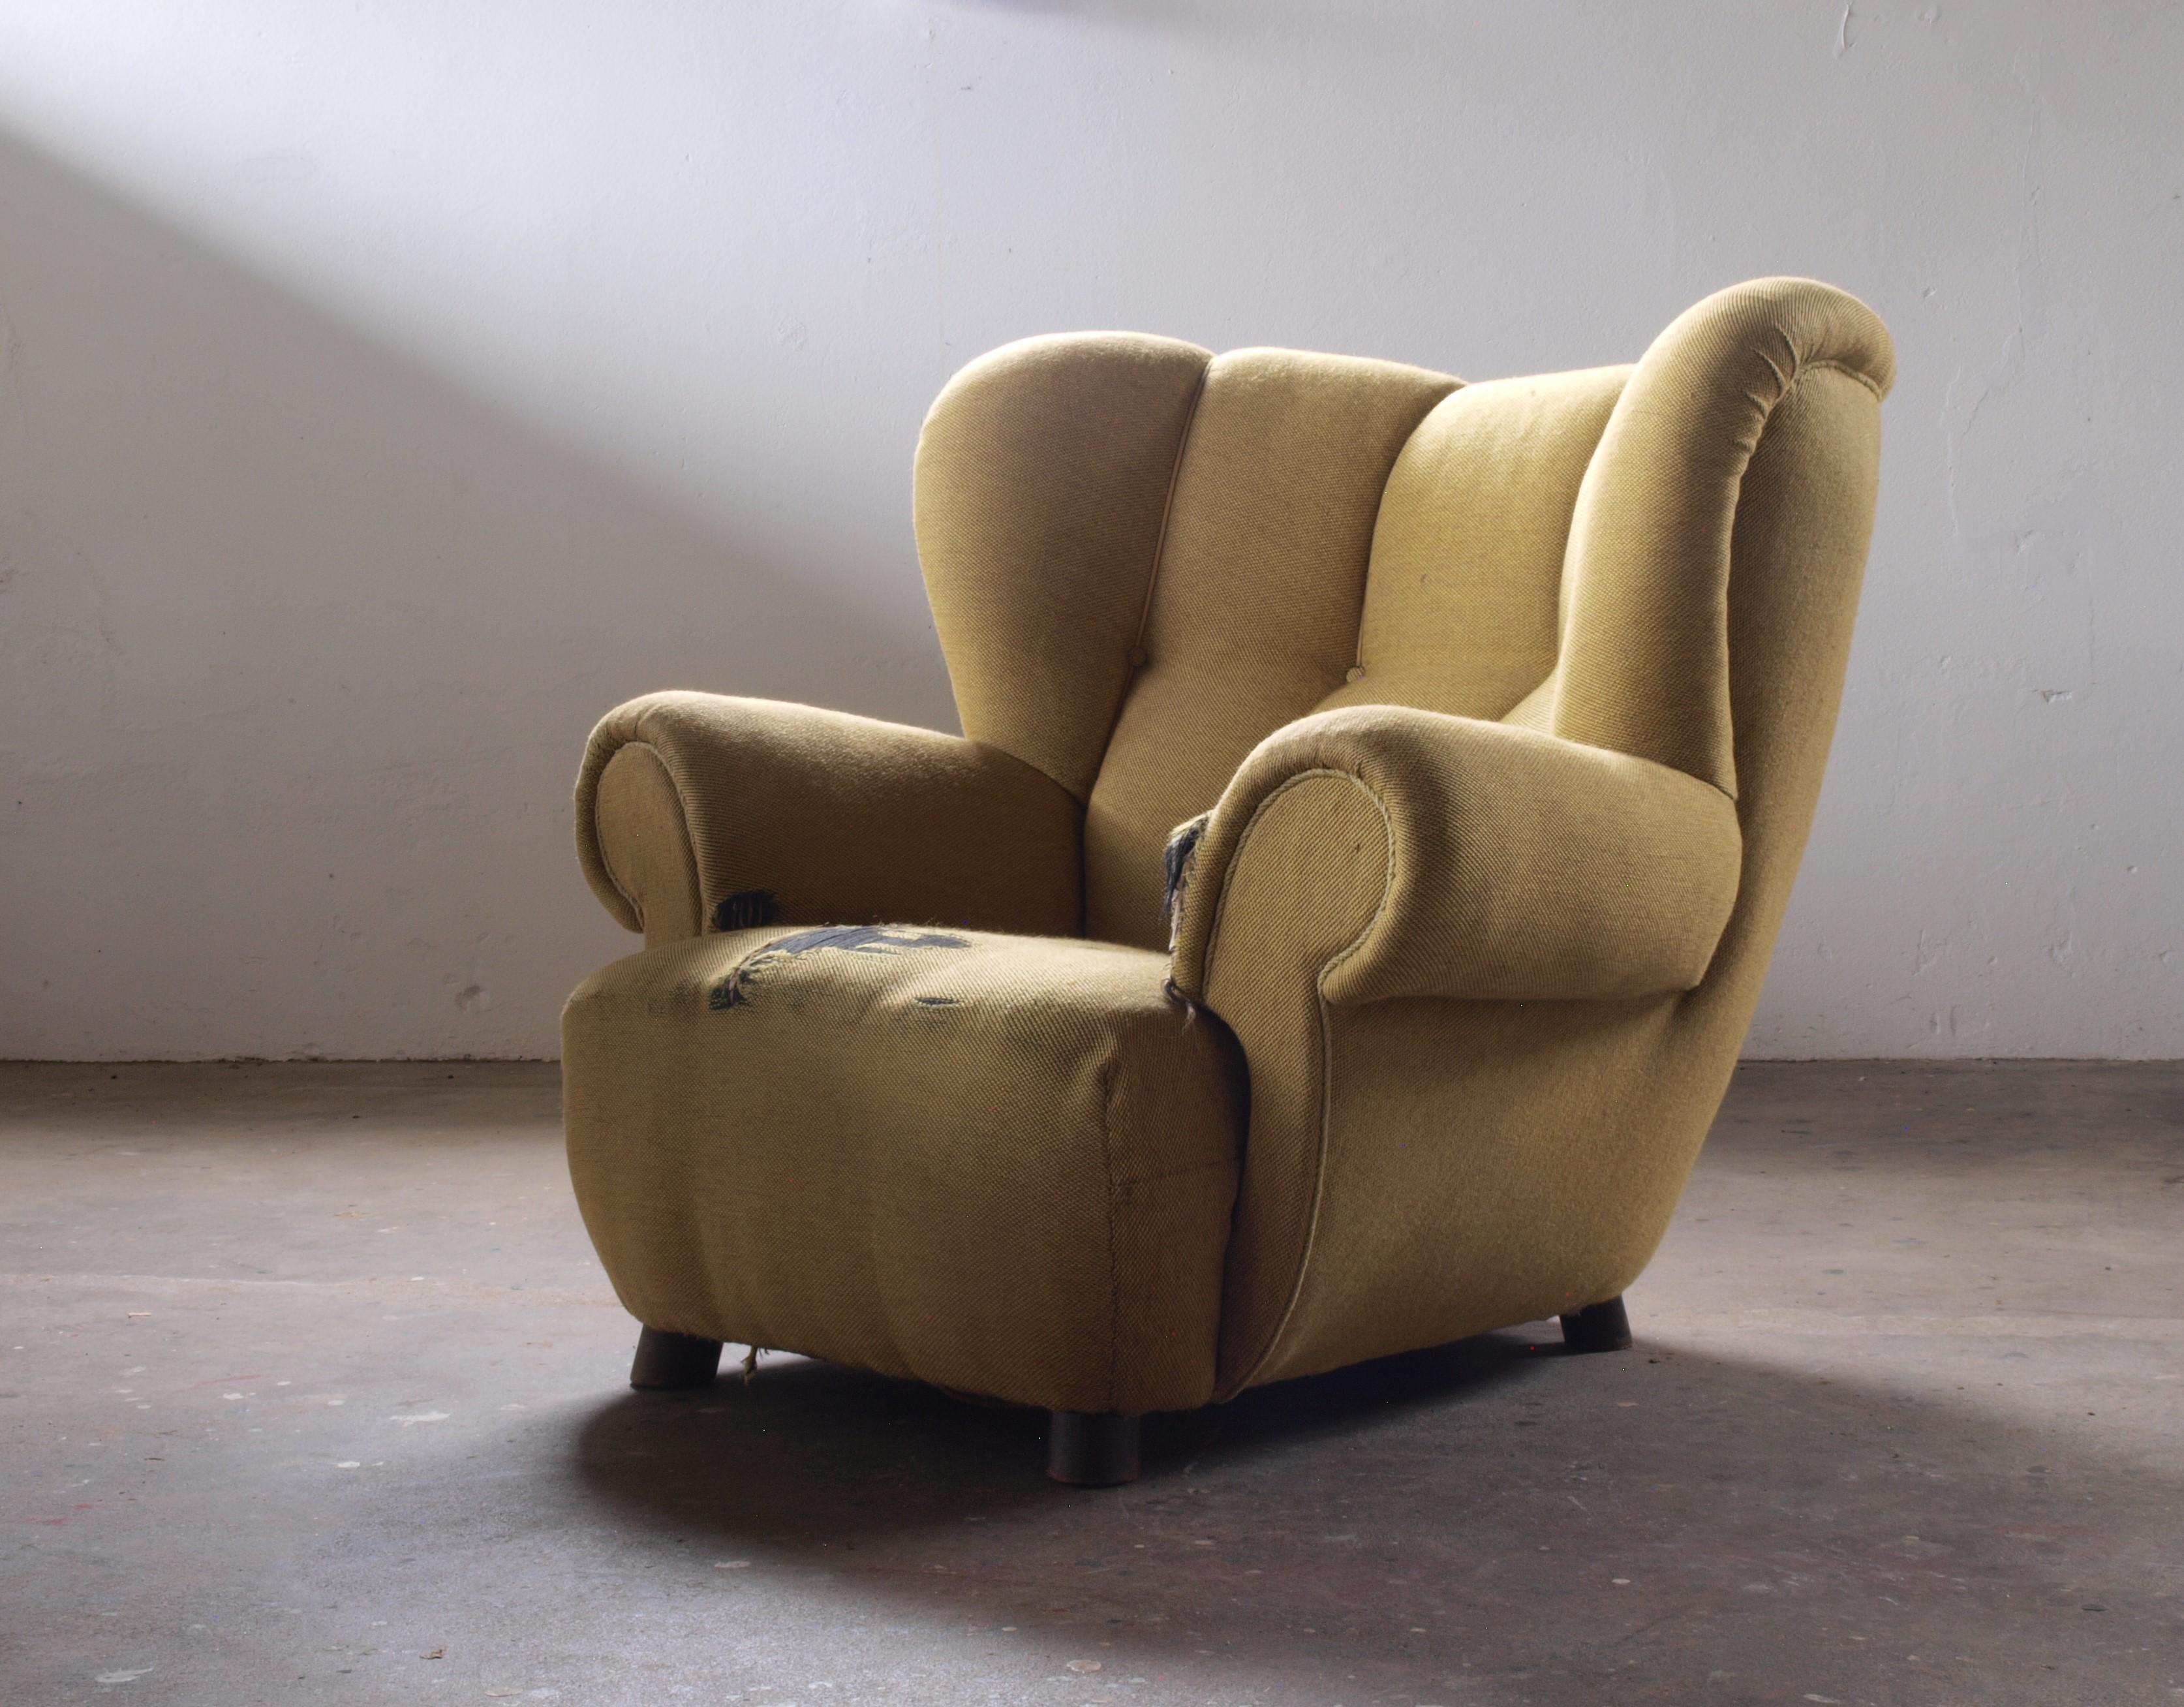 Großer gepolsterter Sessel aus den 1930er Jahren. Bequem und umarmend. Vergleichbar mit dem Stil von Flemming Lassen. Möglicherweise mit Lammfell gepolstert. Benötigt aufgrund seiner Größe und Präsenz viel Platz. Mit passendem Fußhocker für mehr